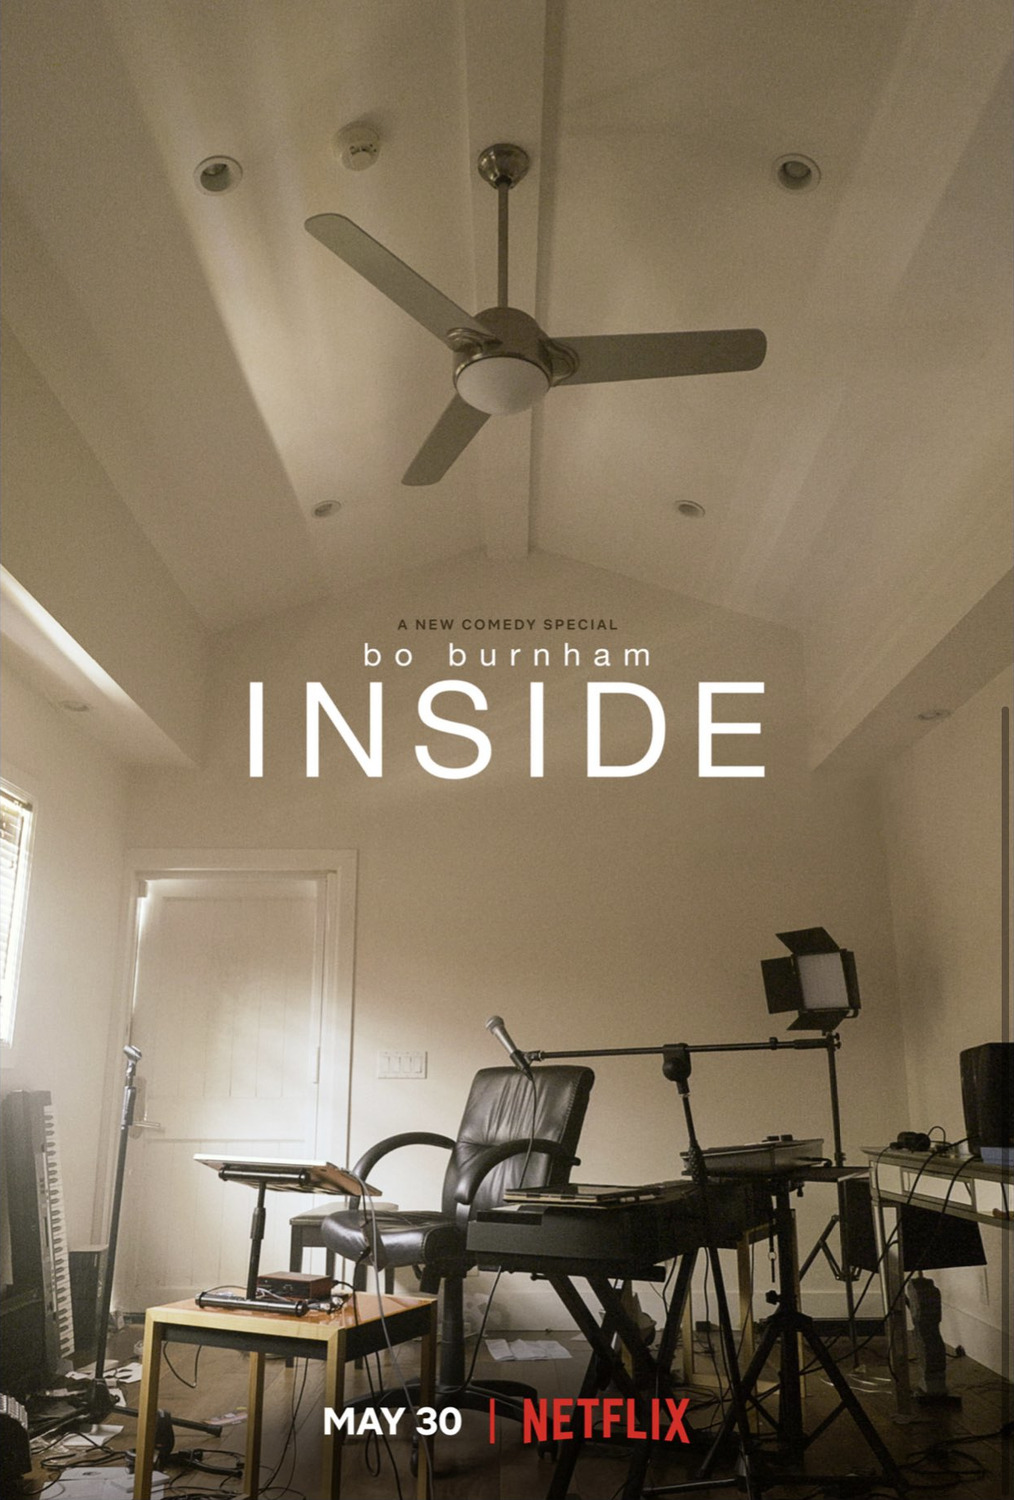 Extra Large TV Poster Image for Bo Burnham: Inside 